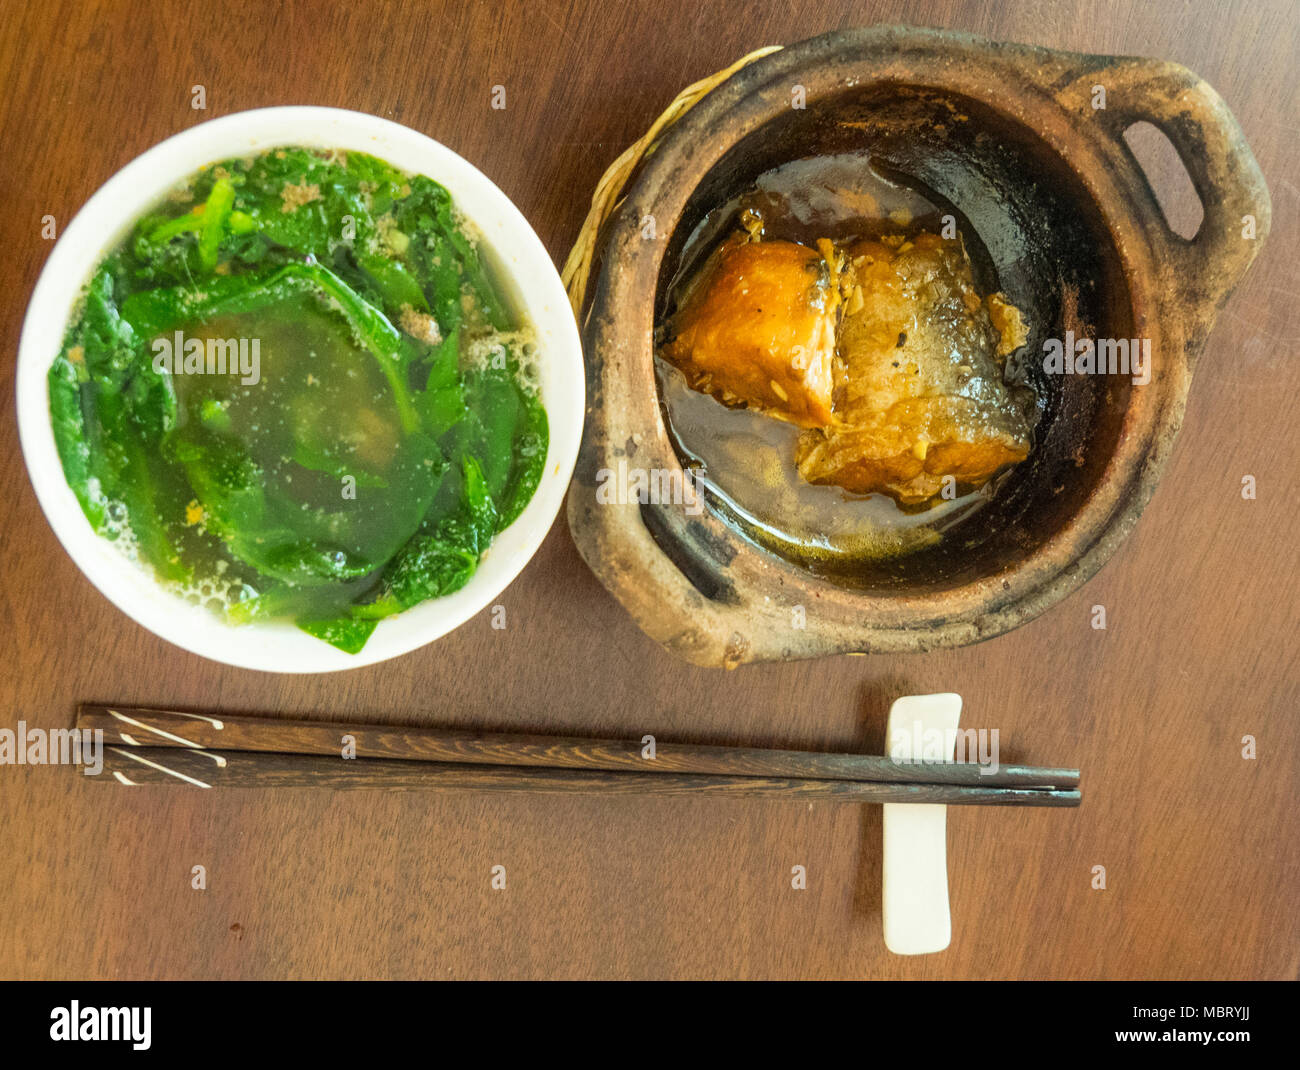 Ca Kho zu, eine geschmorte claypot von Wels oder basa Fisch und einer Schüssel grünem vegetavles, morning glory, rau Muong, oder Wasser Spinat, Ho Chi Minh City. Stockfoto